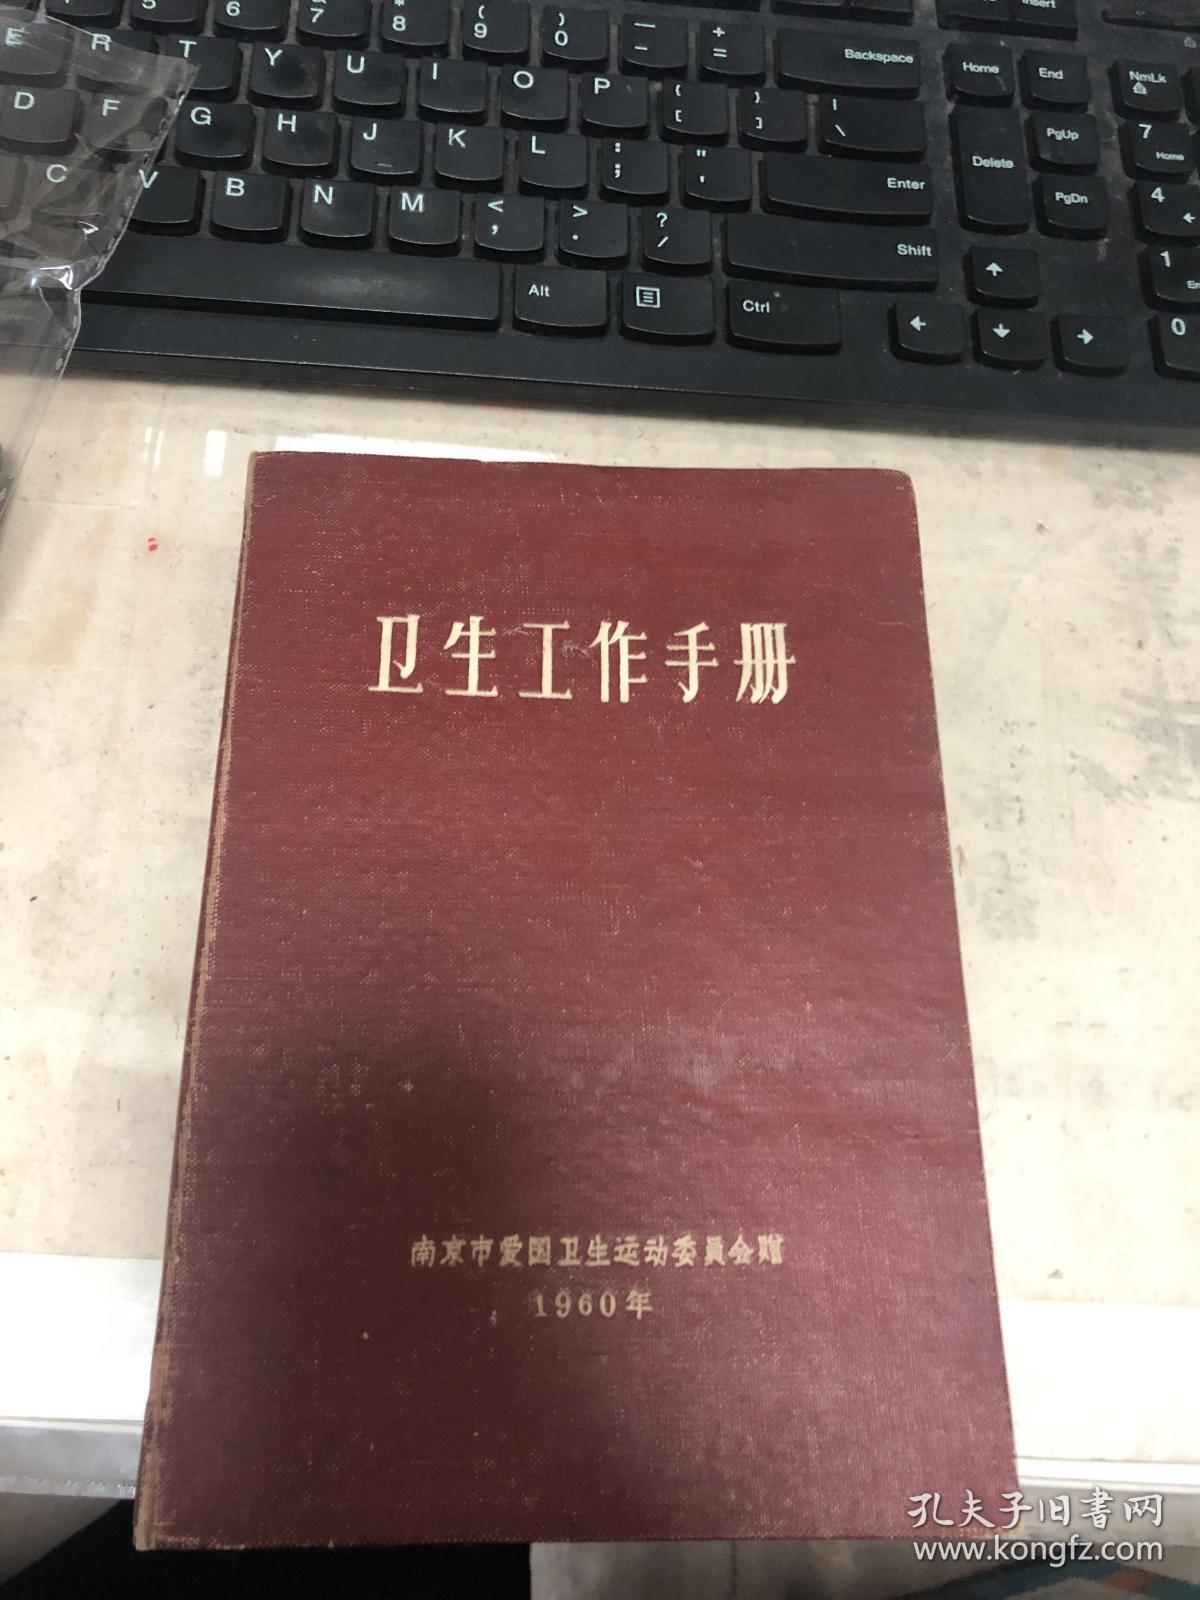 南京爱国卫生委员会卫生工作纪念册